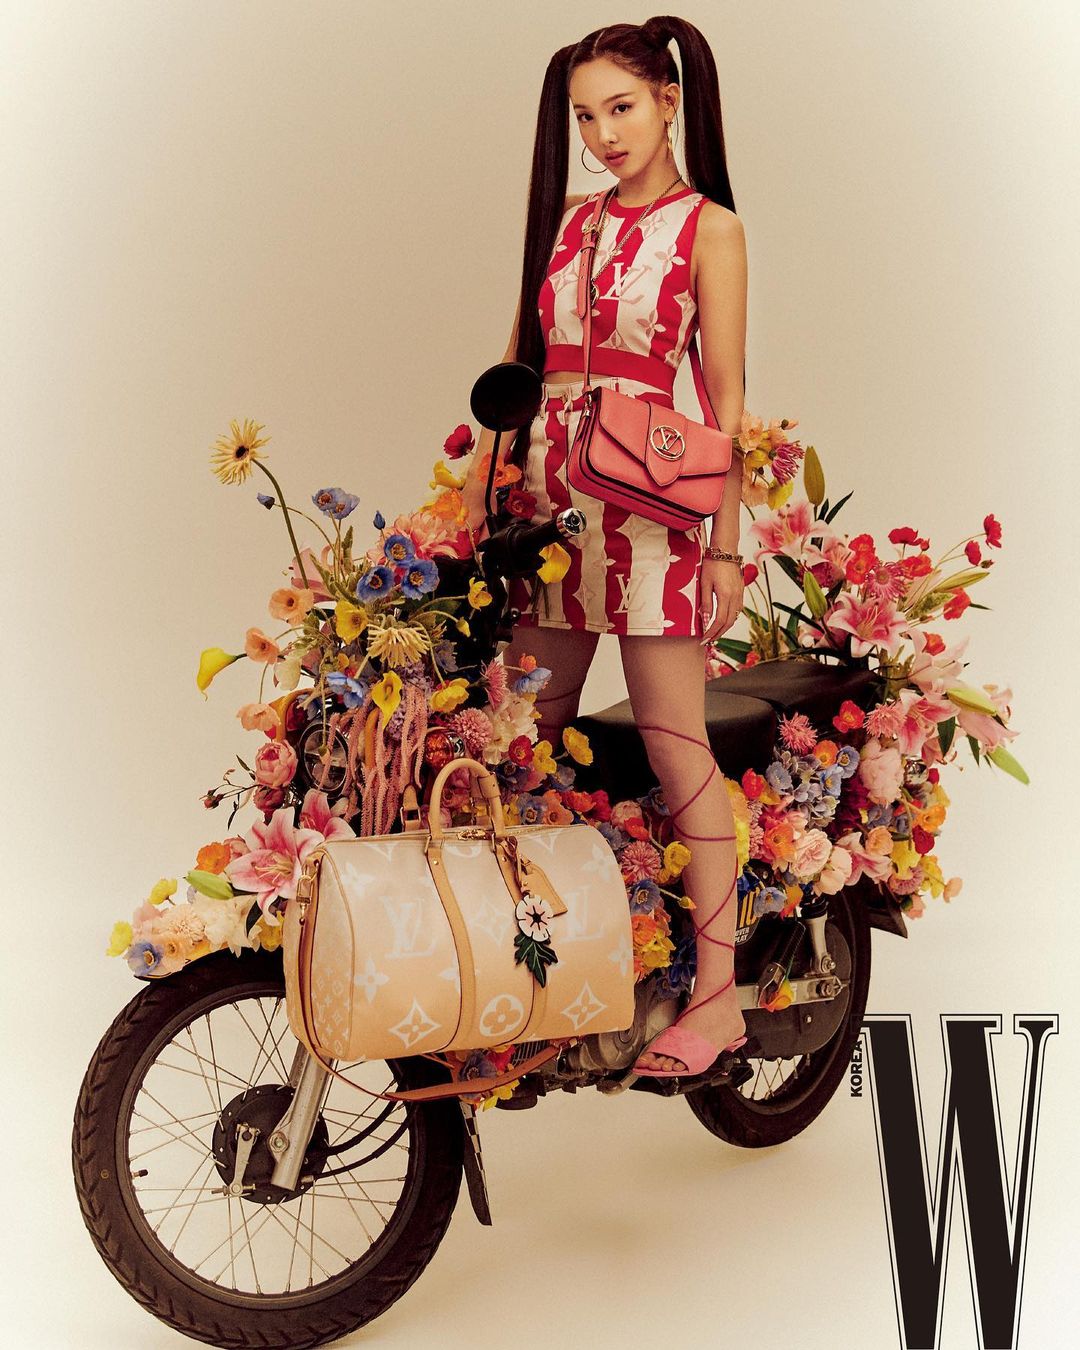 PHOTOSHOOT - Nayeon x W Korea Louis Vuitton Summer 2021 pictorial